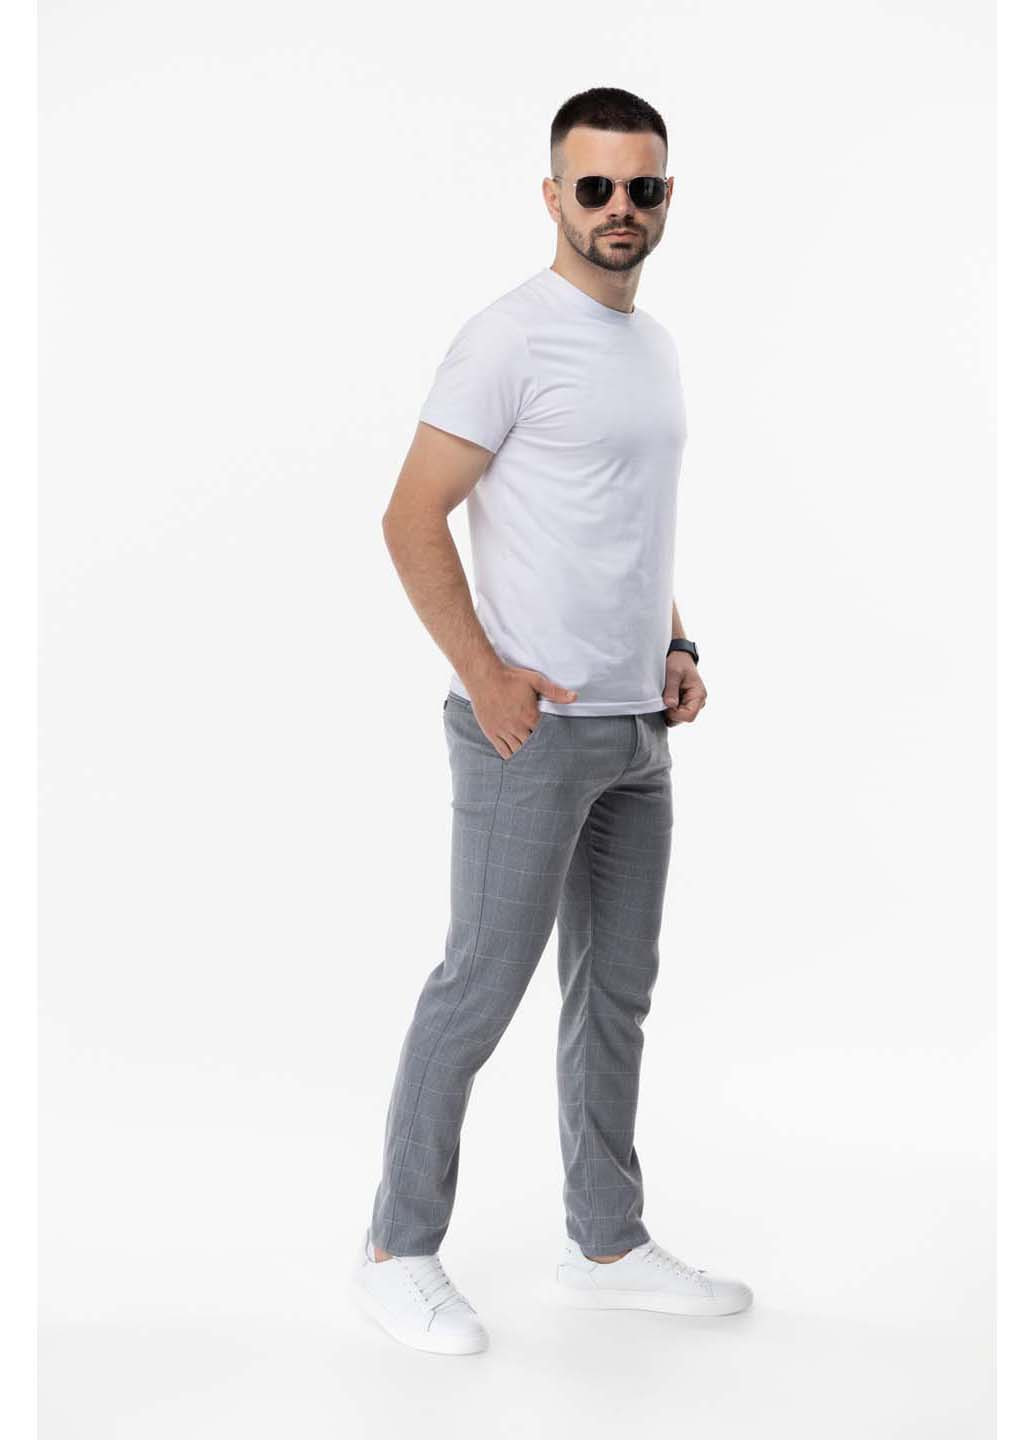 Серые кэжуал демисезонные брюки Redpolo